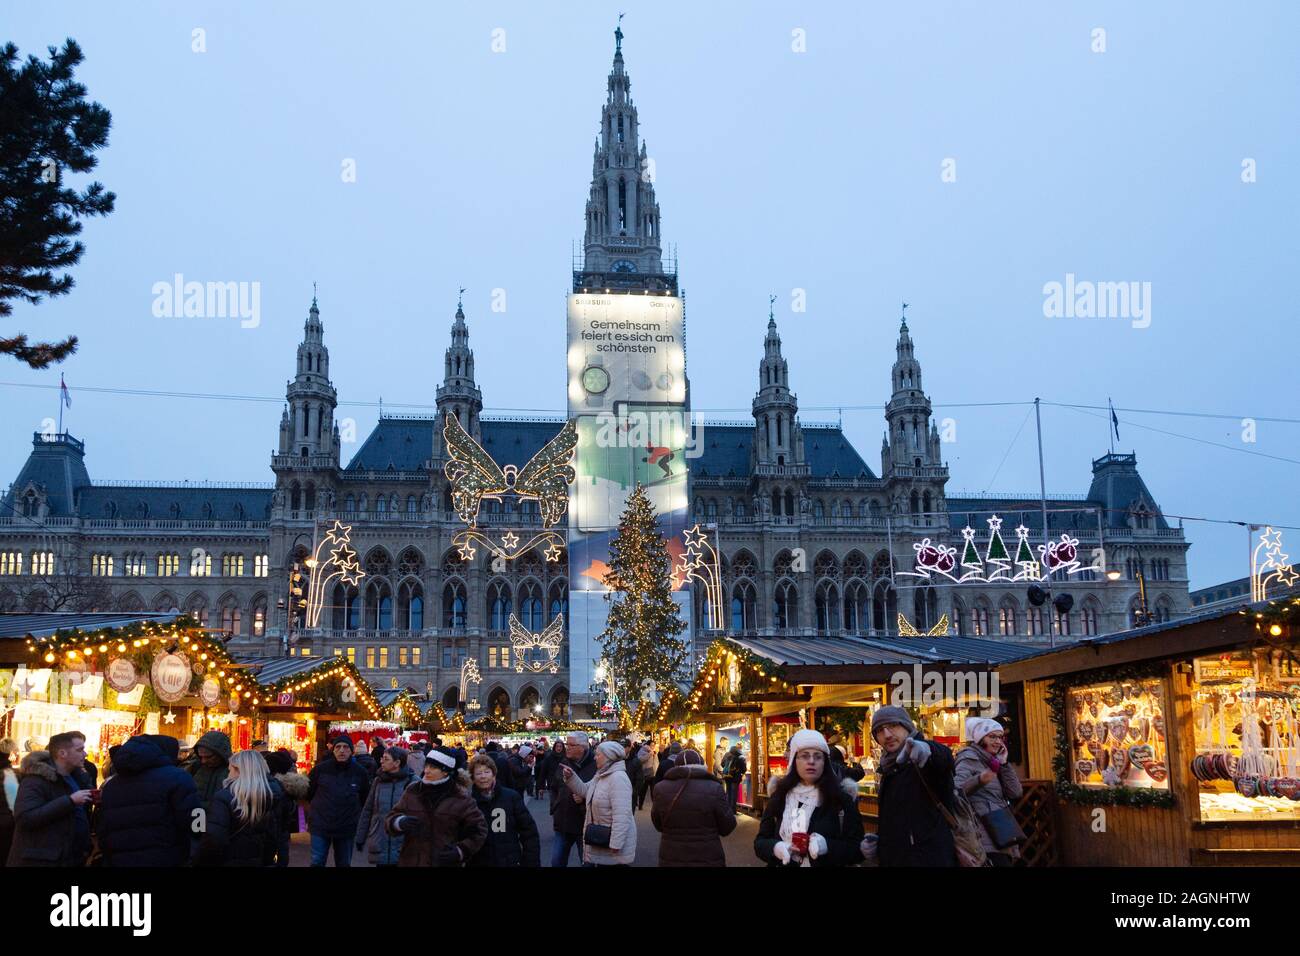 Wiener Weihnachtsmärkte - Menschen einkaufen in der Dämmerung, das Rathaus Weihnachtsmarkt, Rathausplatz, Wien Österreich Europa Stockfoto